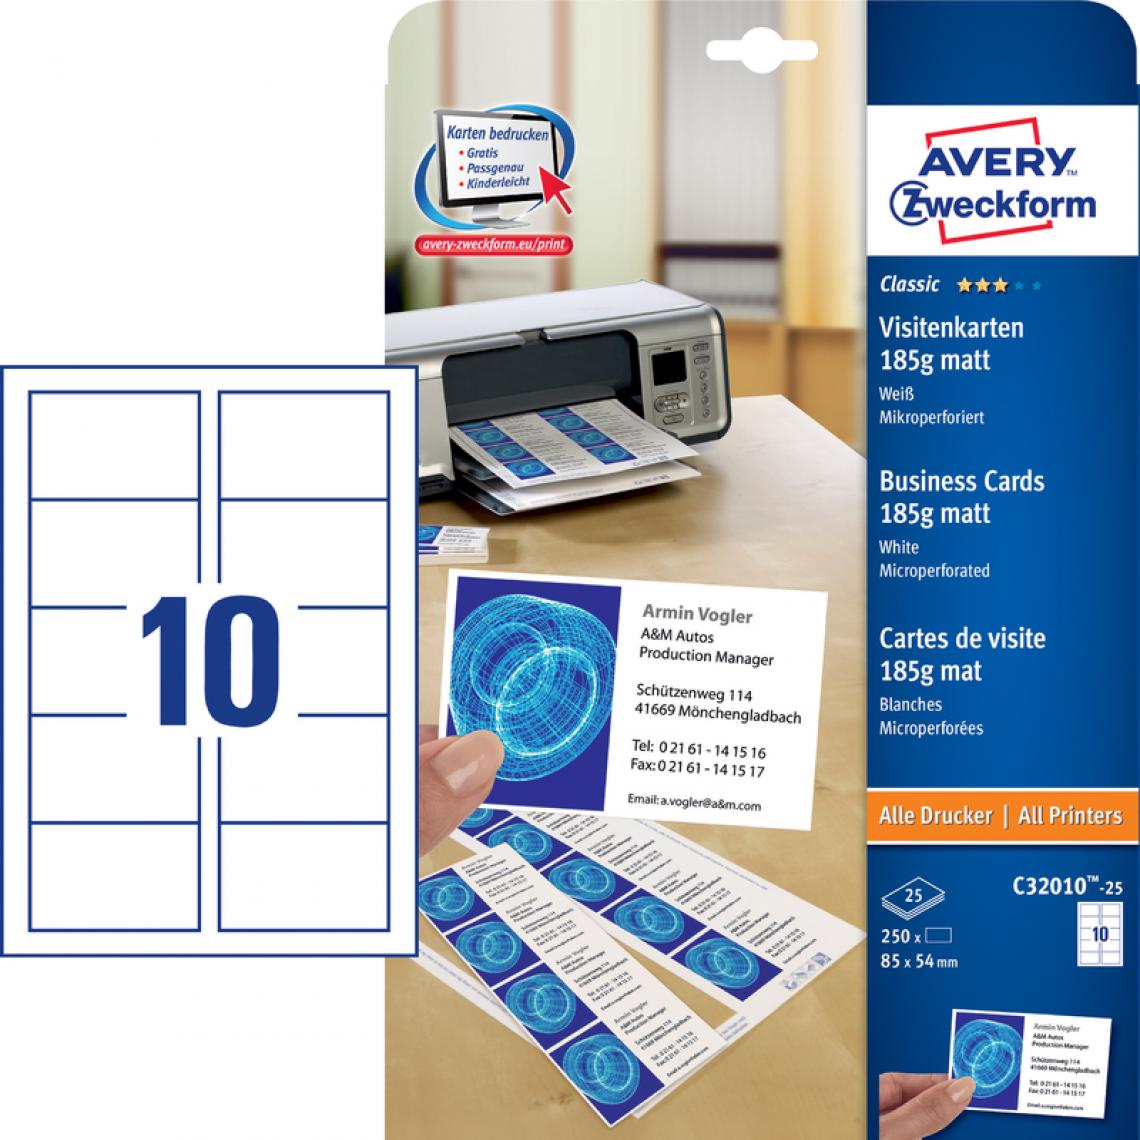 Avery - AVERY Zweckform Cartes de visite, 85 x 54 mm, blanc () - Accessoires Bureau